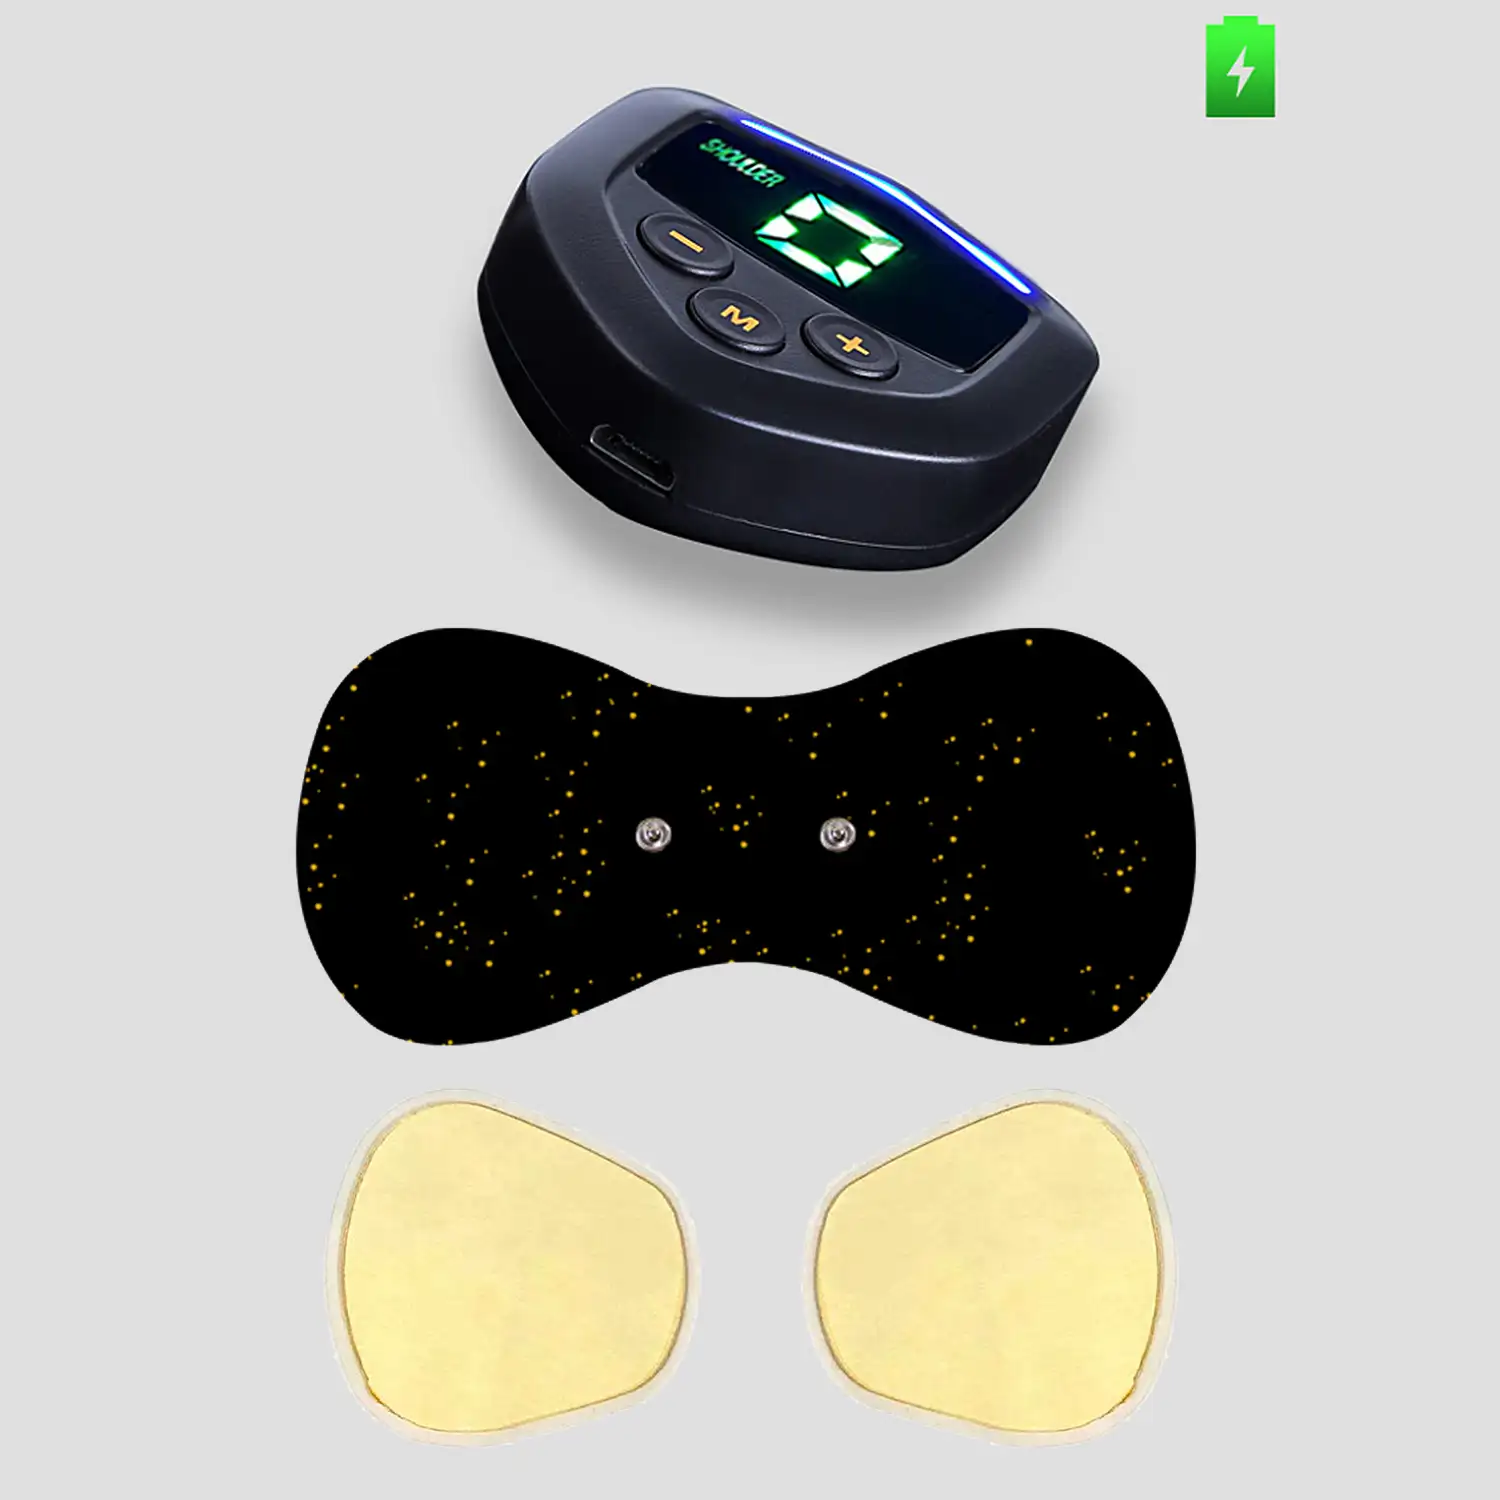 Estimulador electrónico EMS DG3Q, especial para cuello y espalda. Ayuda a aliviar el dolor muscular y la fatiga. Batería recargable.